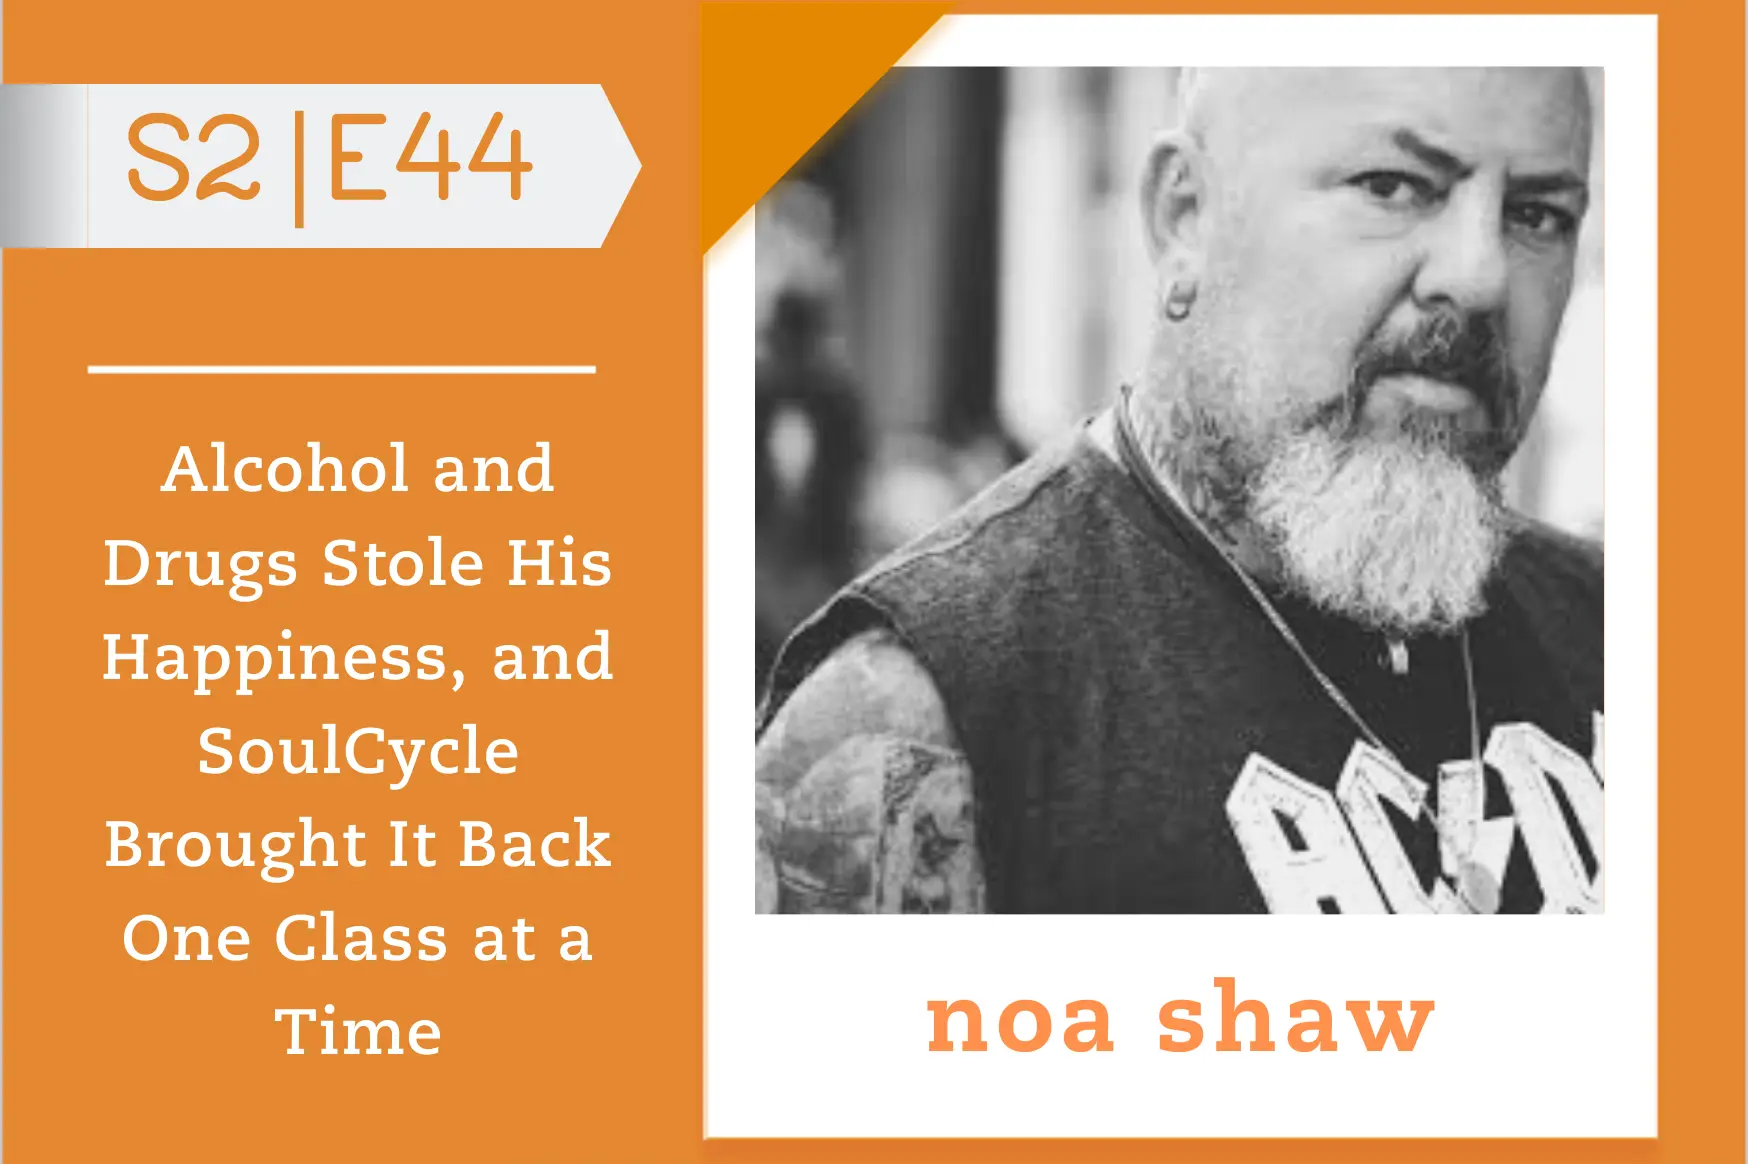 #44 - Noa Shaw